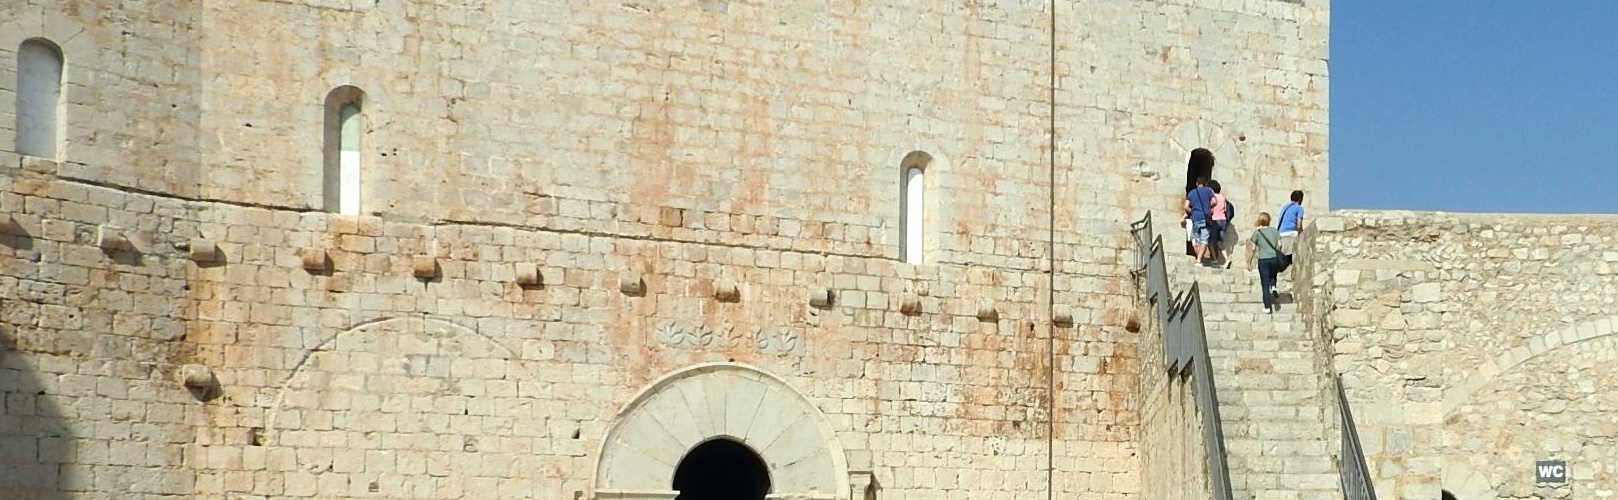 Ligera bajada de visitantes al castillo de Peñíscola durante el 2018